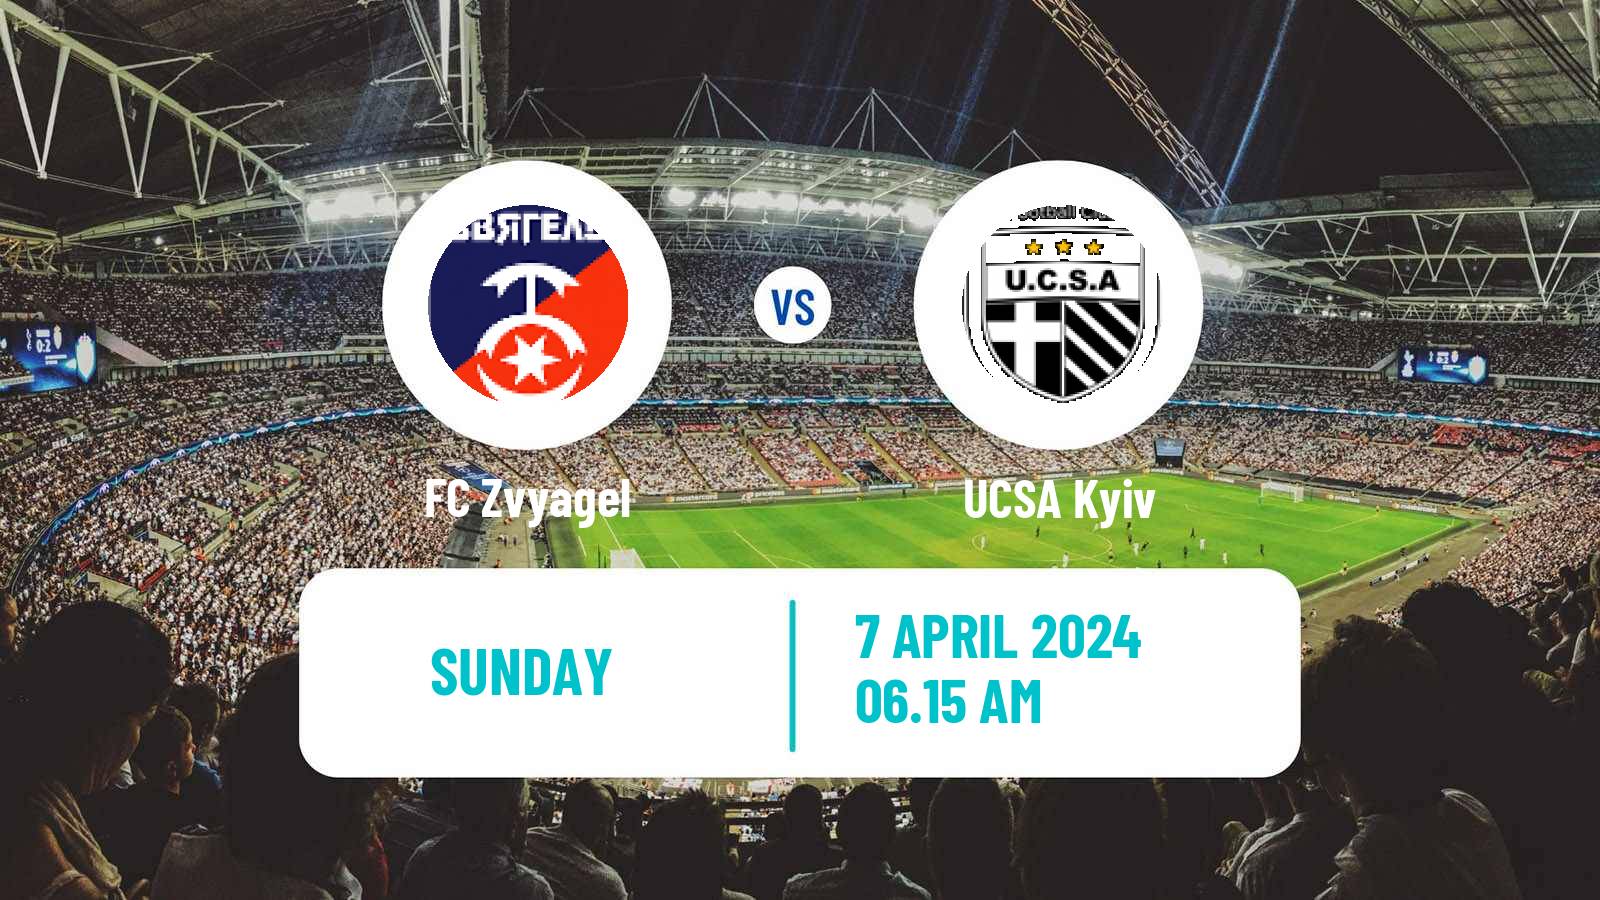 Soccer Ukrainian Druha Liga Zvyagel - UCSA